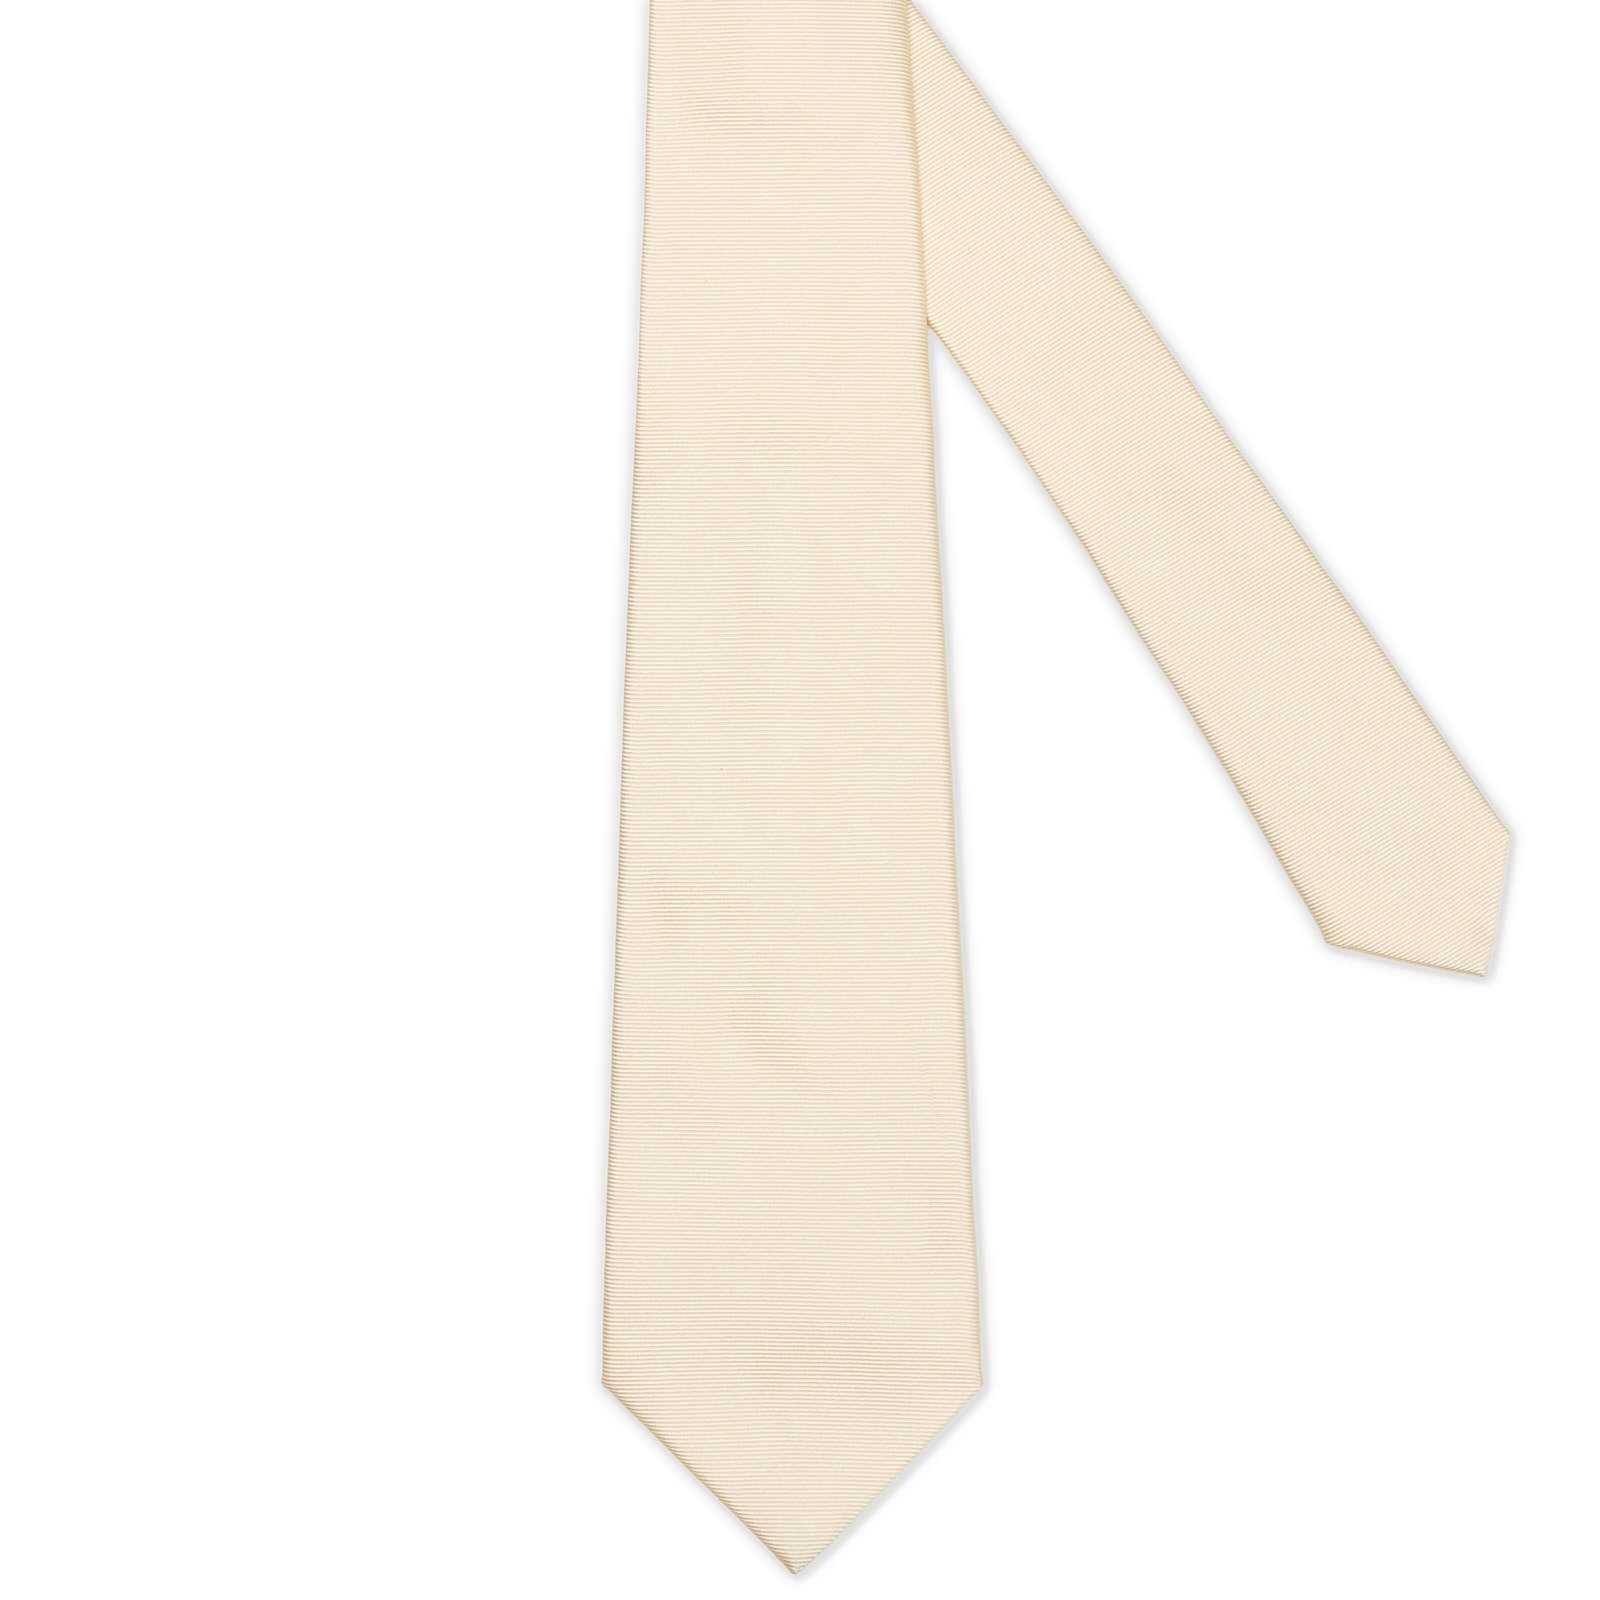 MATTABISCH FOR VANNUCCI Beige Horizontal Striped Silk Tie NEW